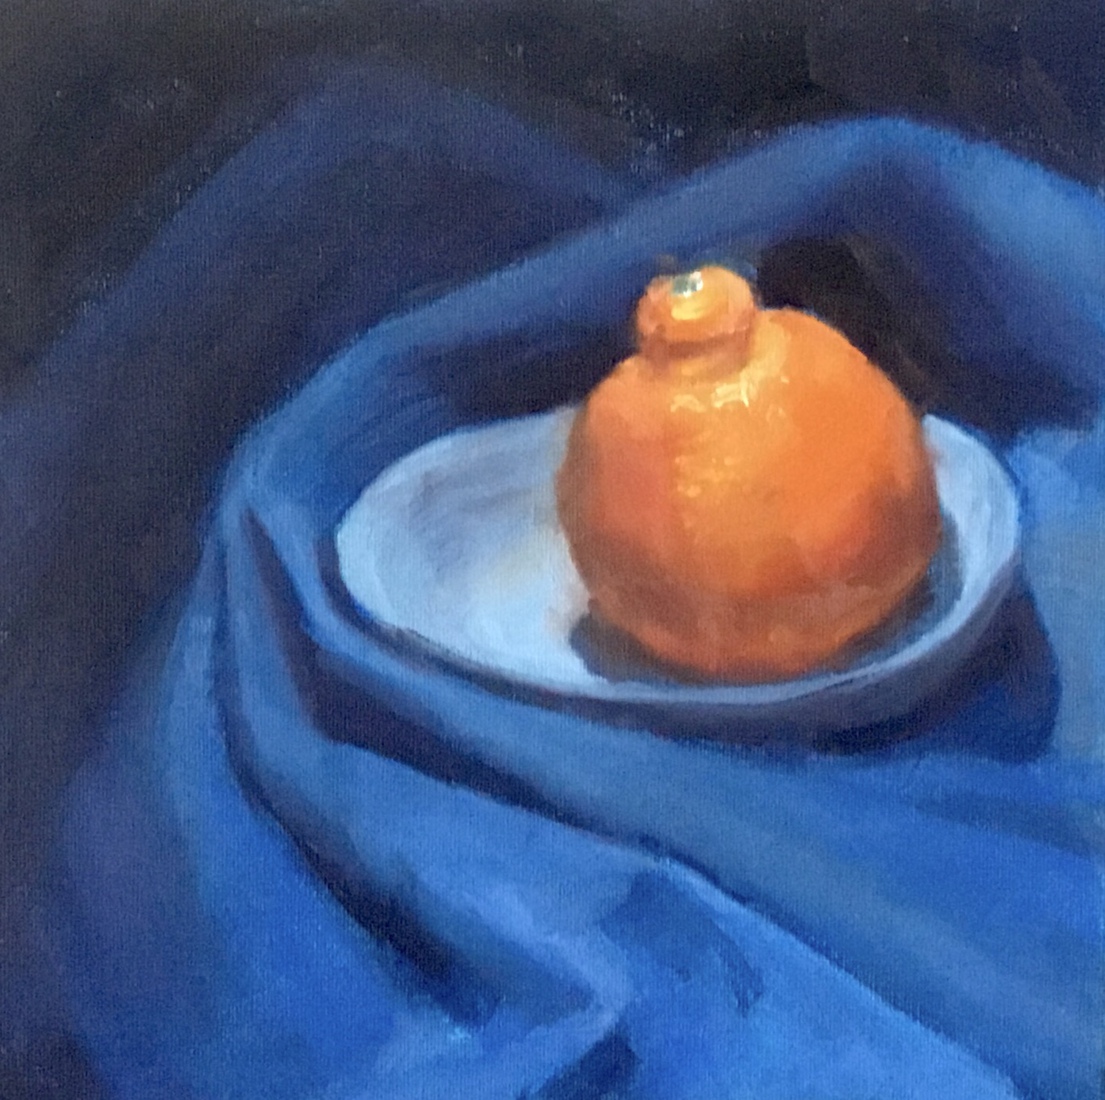 Floating tangerine